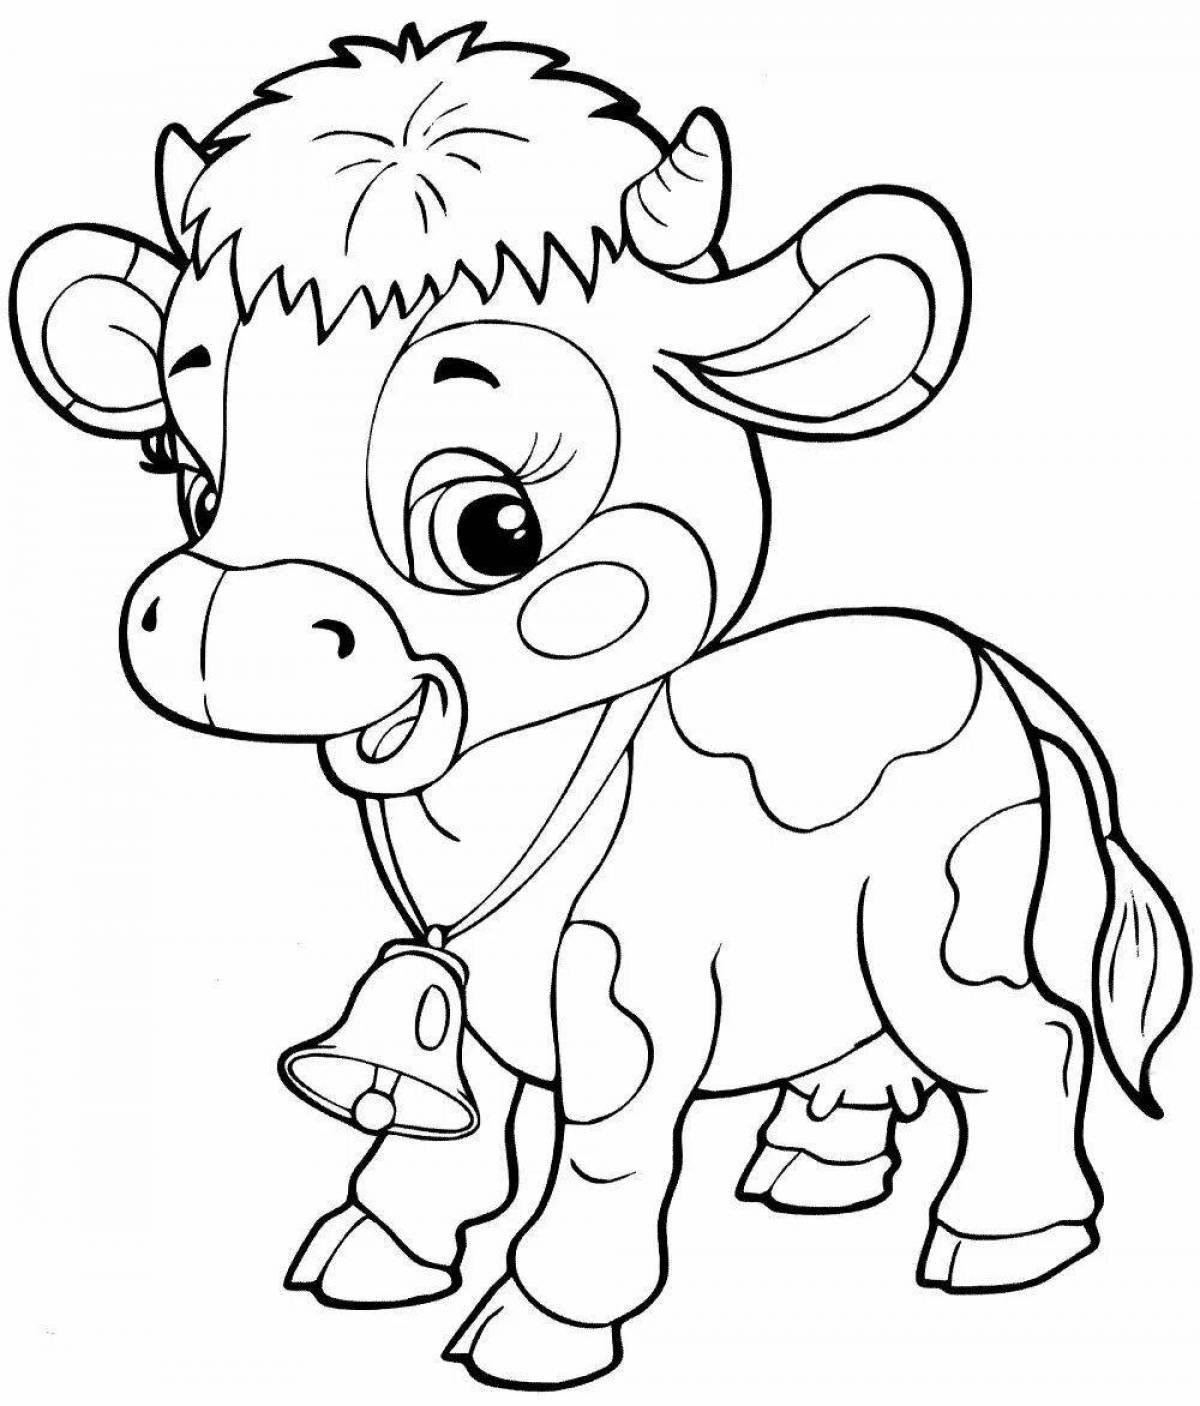 Распечатать коровку раскраску. Раскраска коровка для детей 3-4 лет. Веселая коровка разукрашки. Машина с коровкой раскраска для детей.